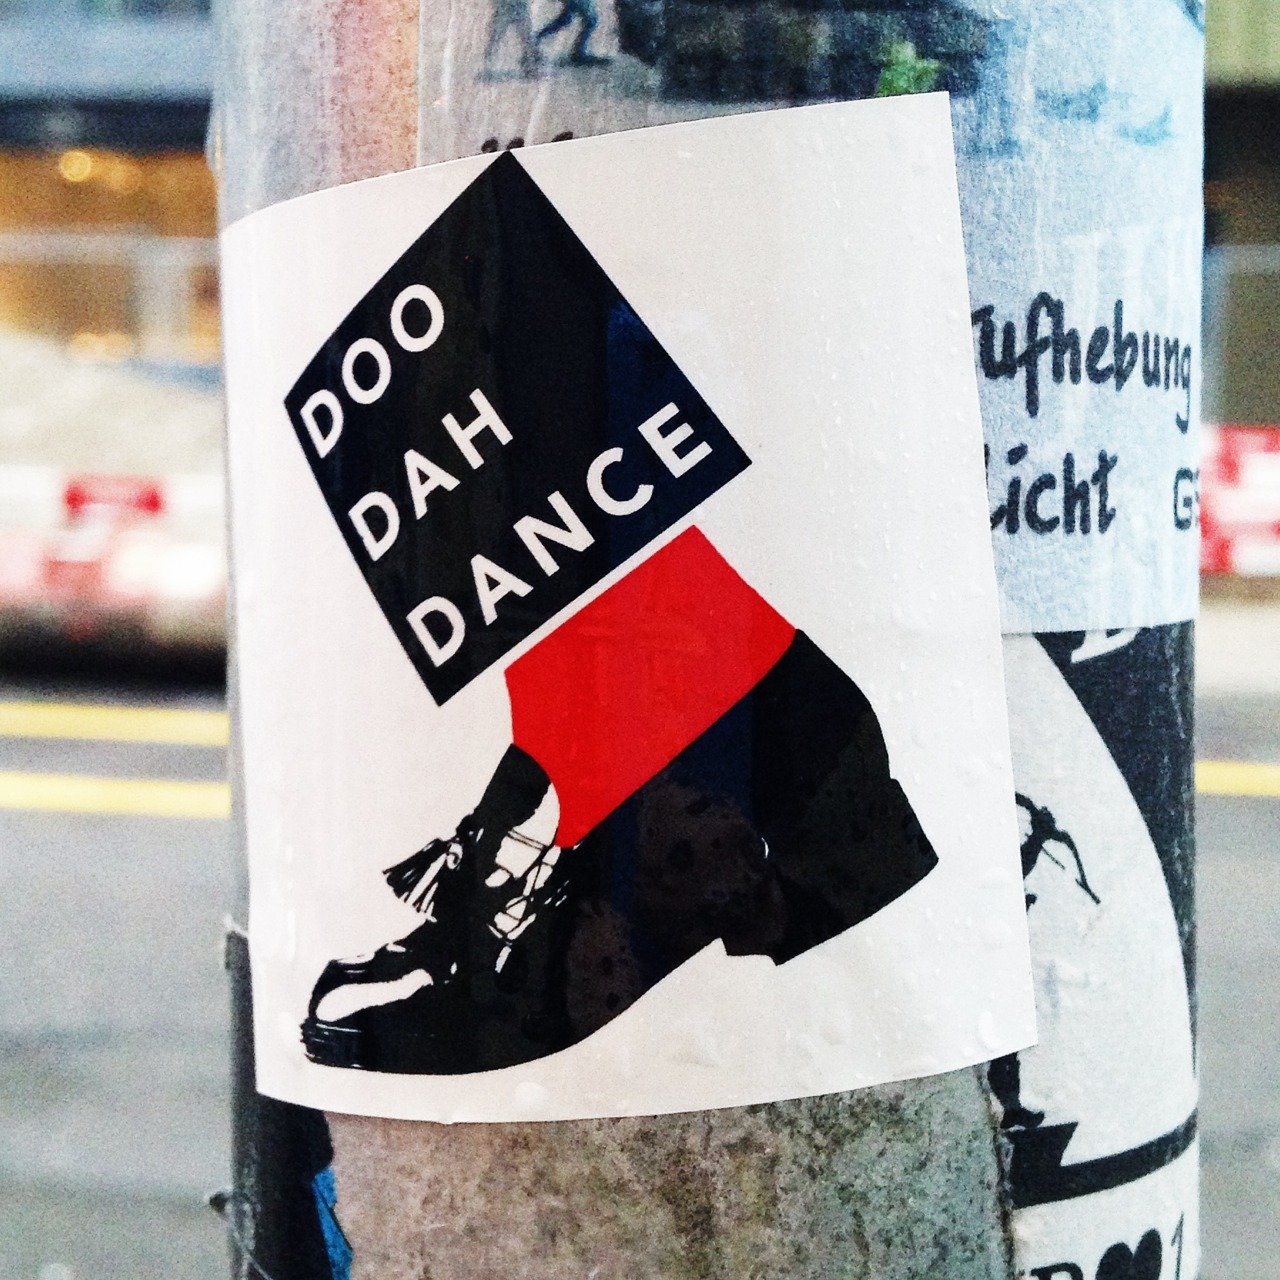 DOO
DAH
DANCE